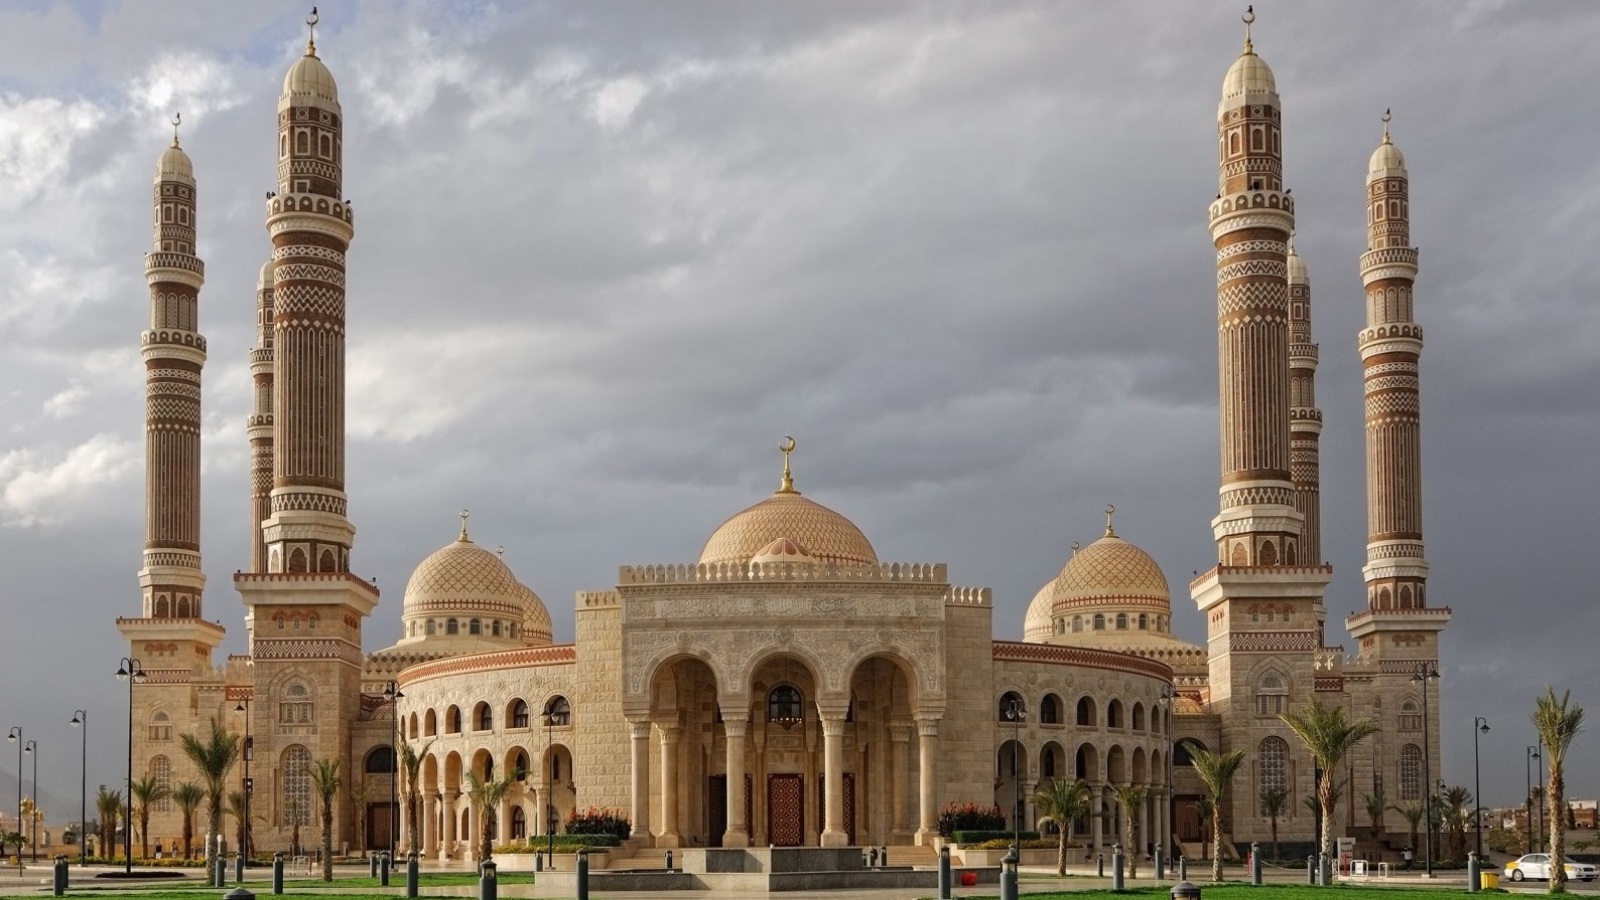 المسجد كان المشروع المعماري الأكبر والأبرز دائما في المدينة العربية بل كانت المساجد بمثابة صروح إسلامية بارزة متميزة في سياق المدينة ونسيجها